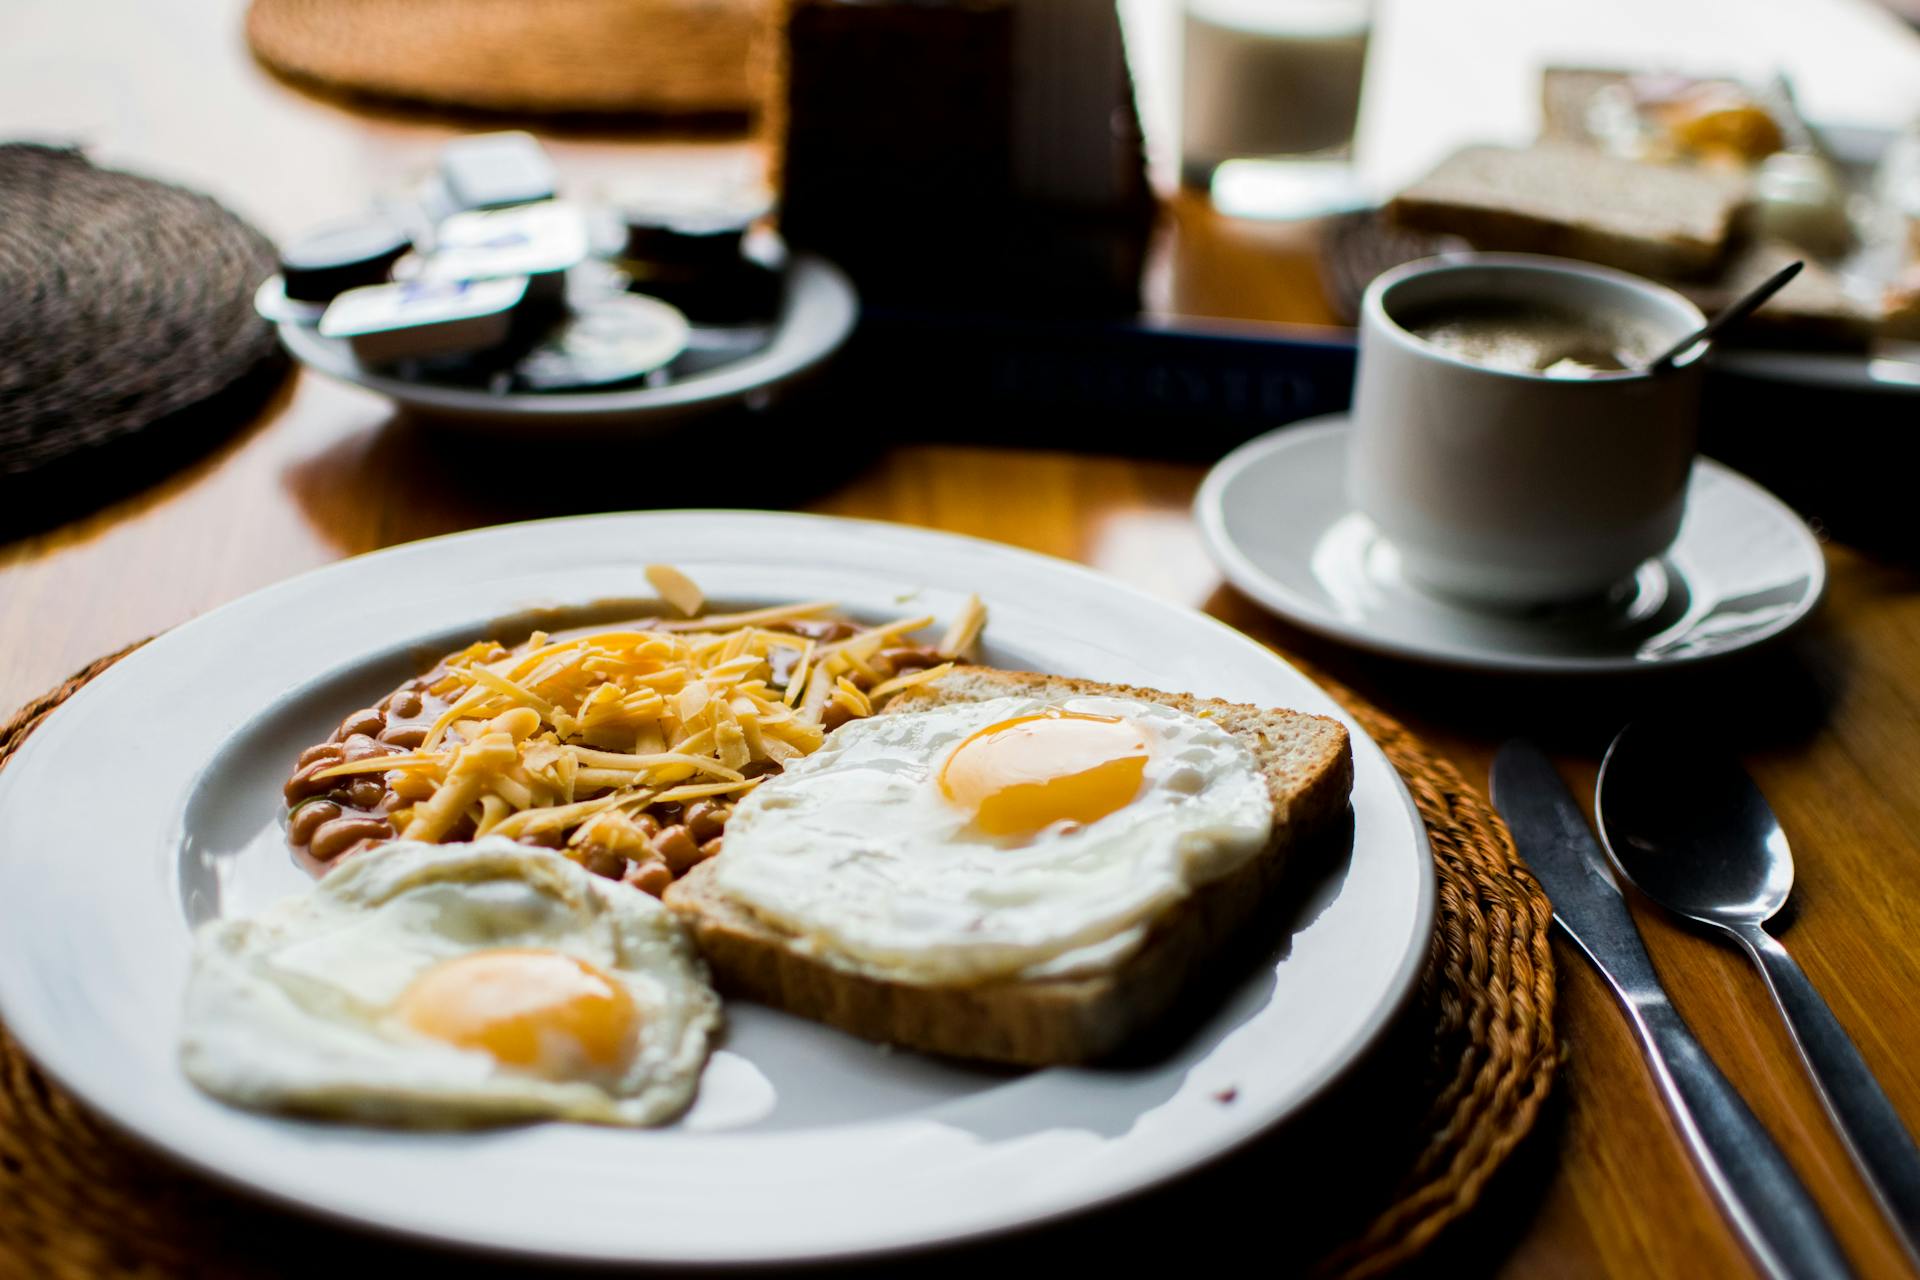 Desayuno dispuesto sobre la mesa | Foto: Pexels